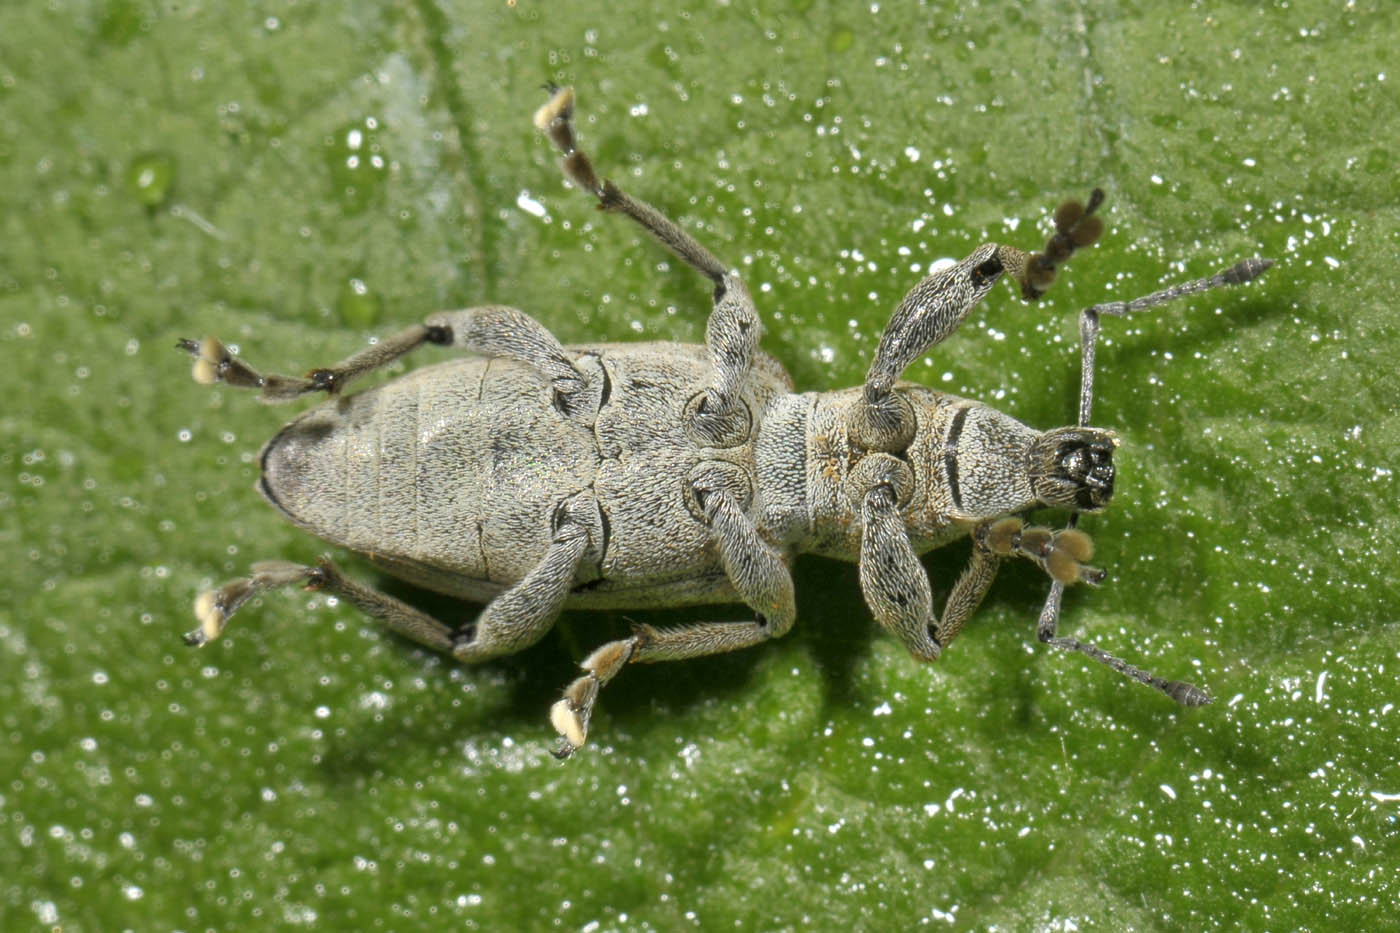 Curculionidae: Tanymecus palliatus?